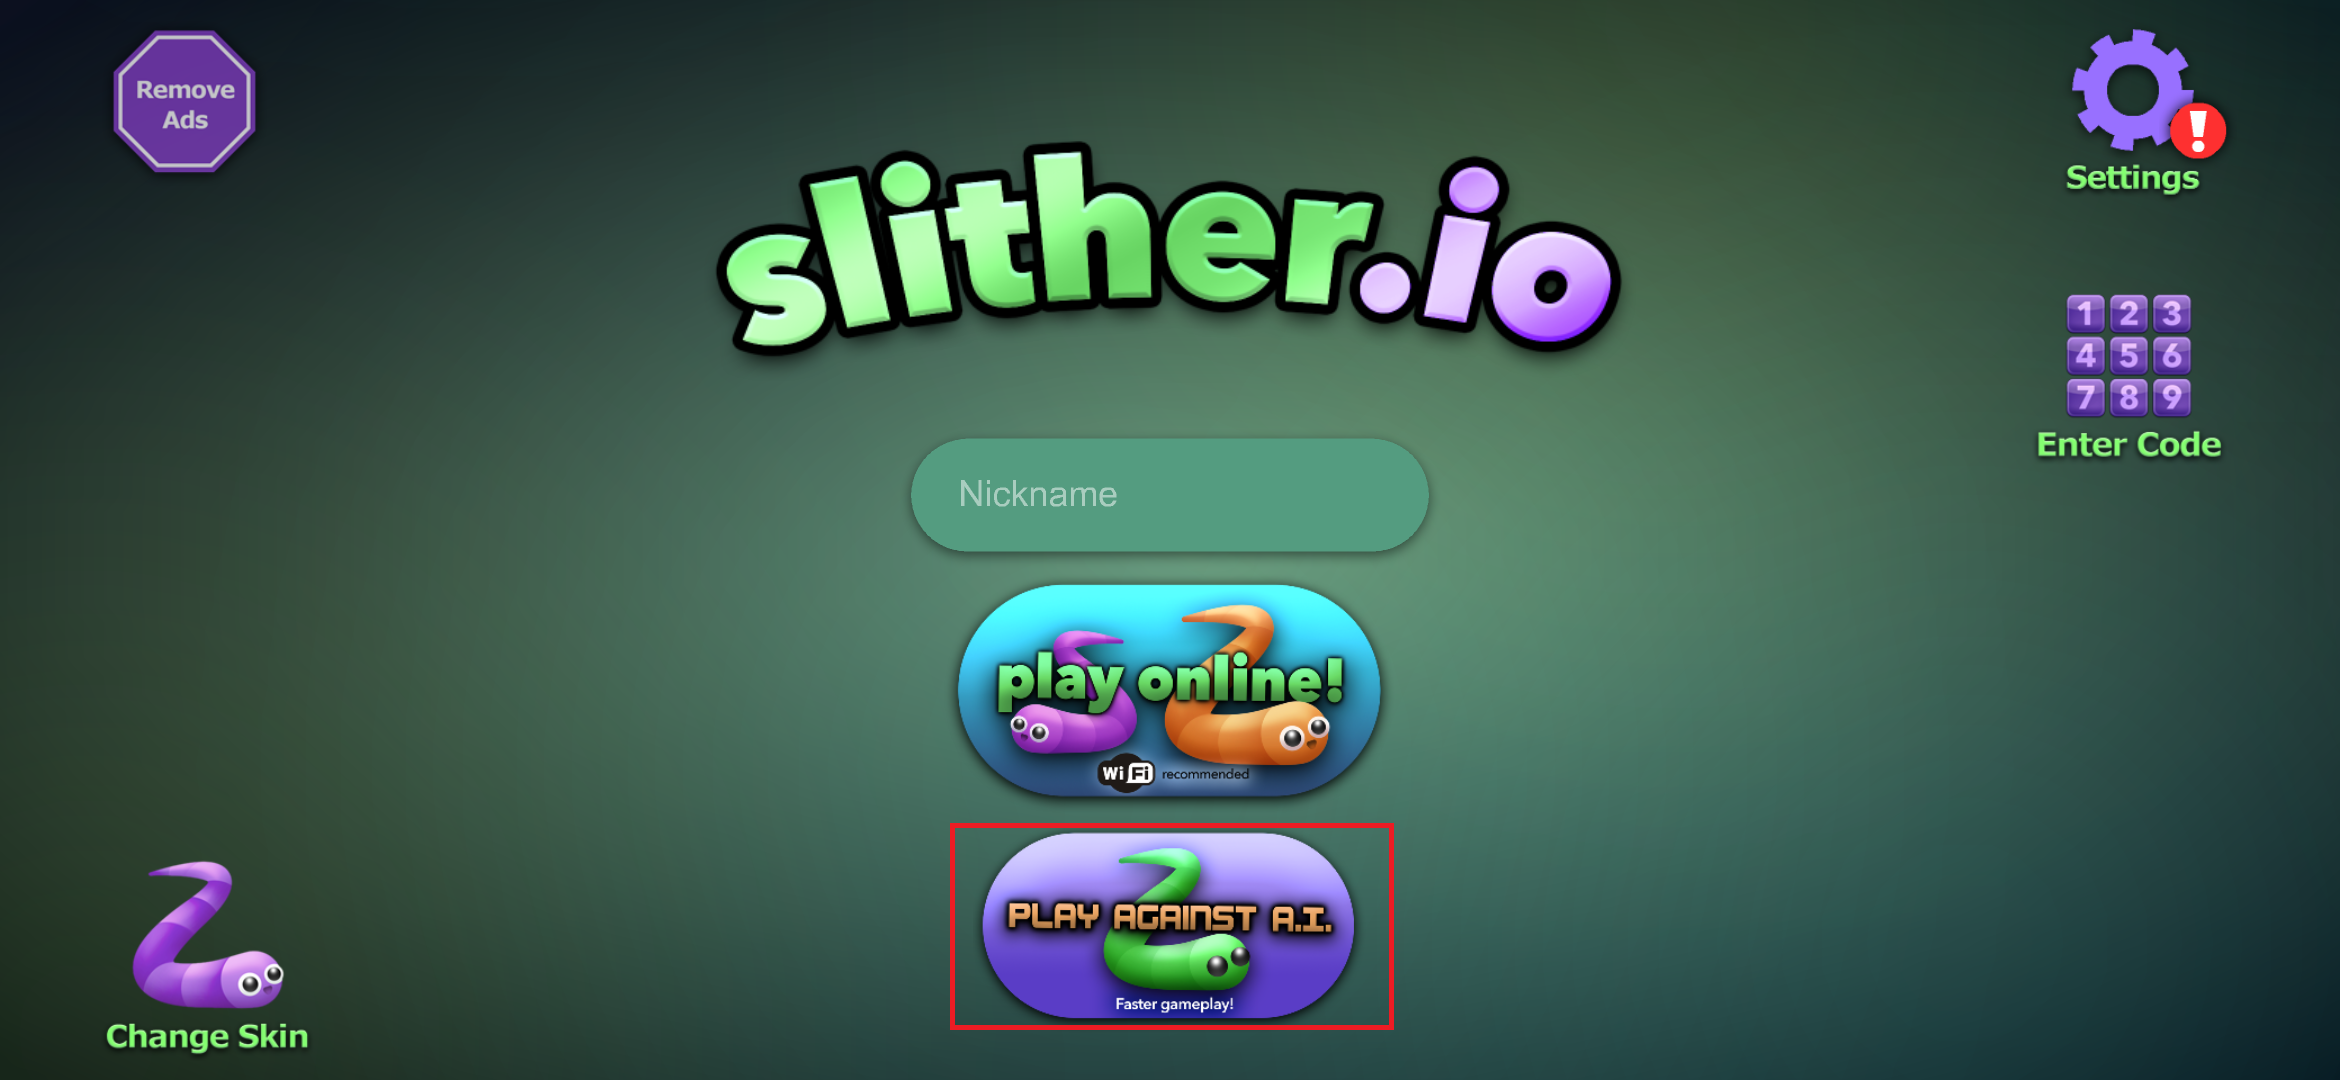 슬리더리오(slither.io) 공략! 플레이 방법과 미끄럼틀을 크게 만드는 비법 소개, 시보드 블로그